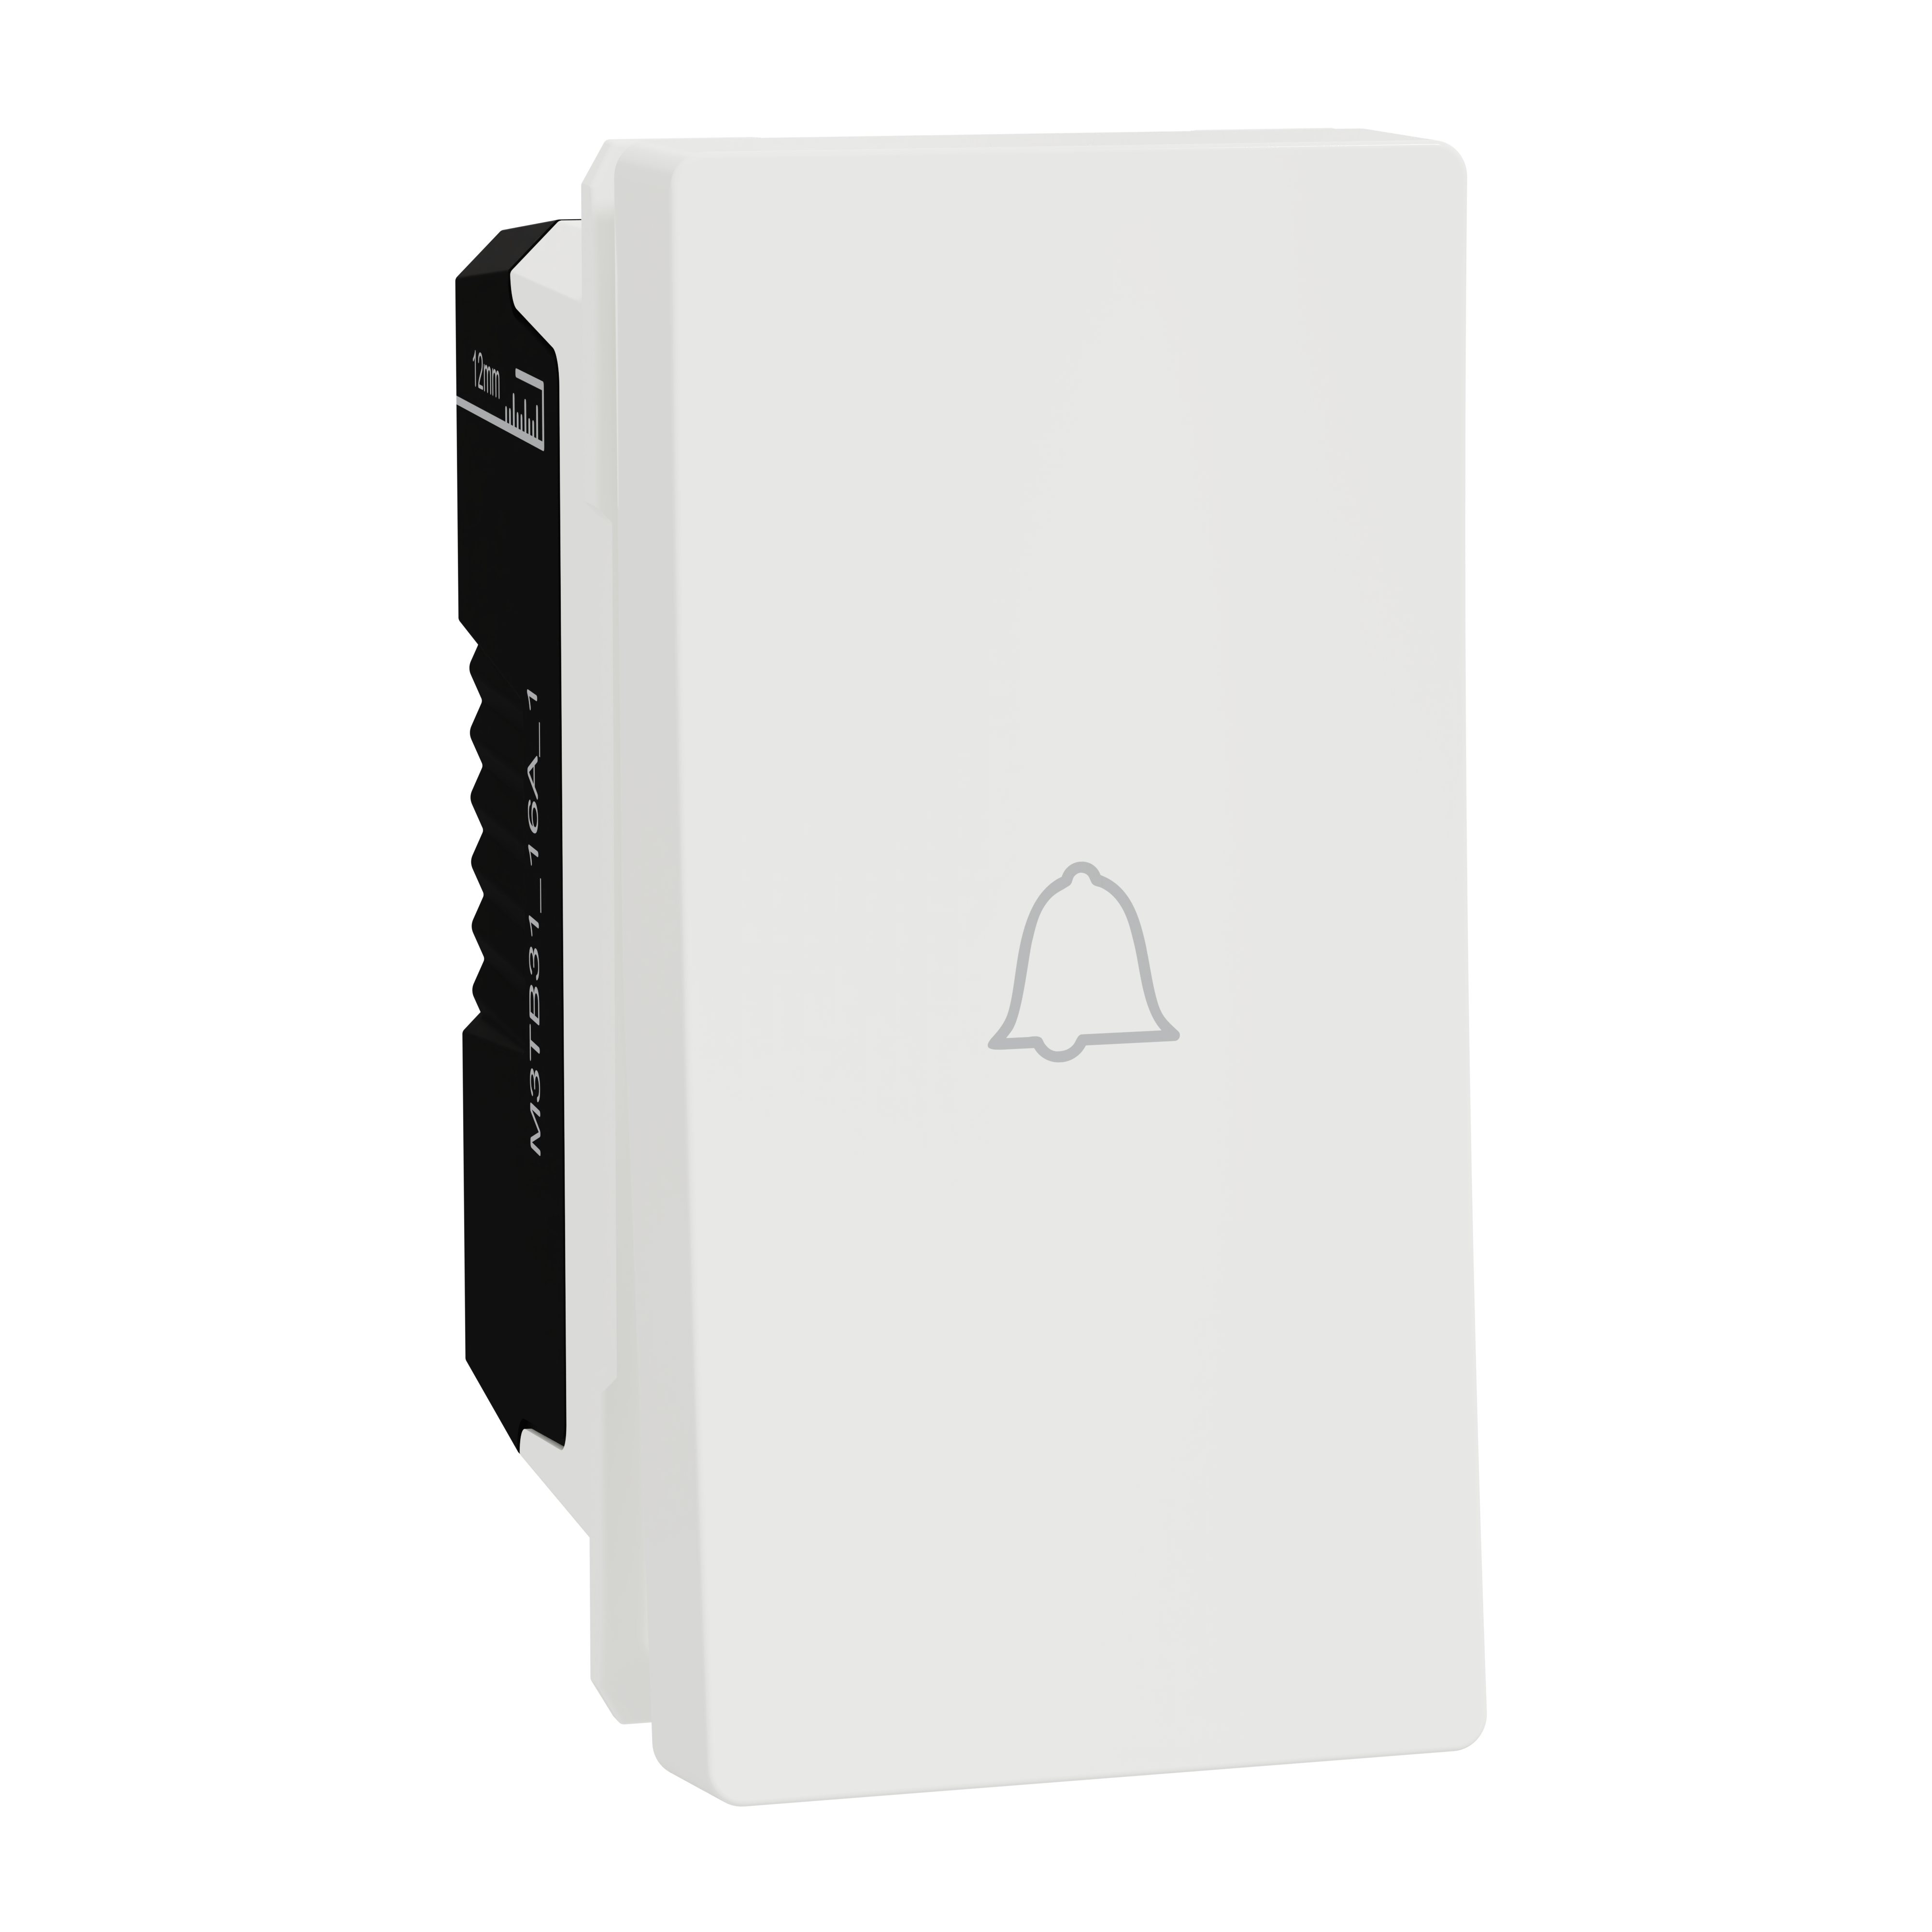 Doorbell Switch, Miluz E, 10A, 250V, 1 module, White